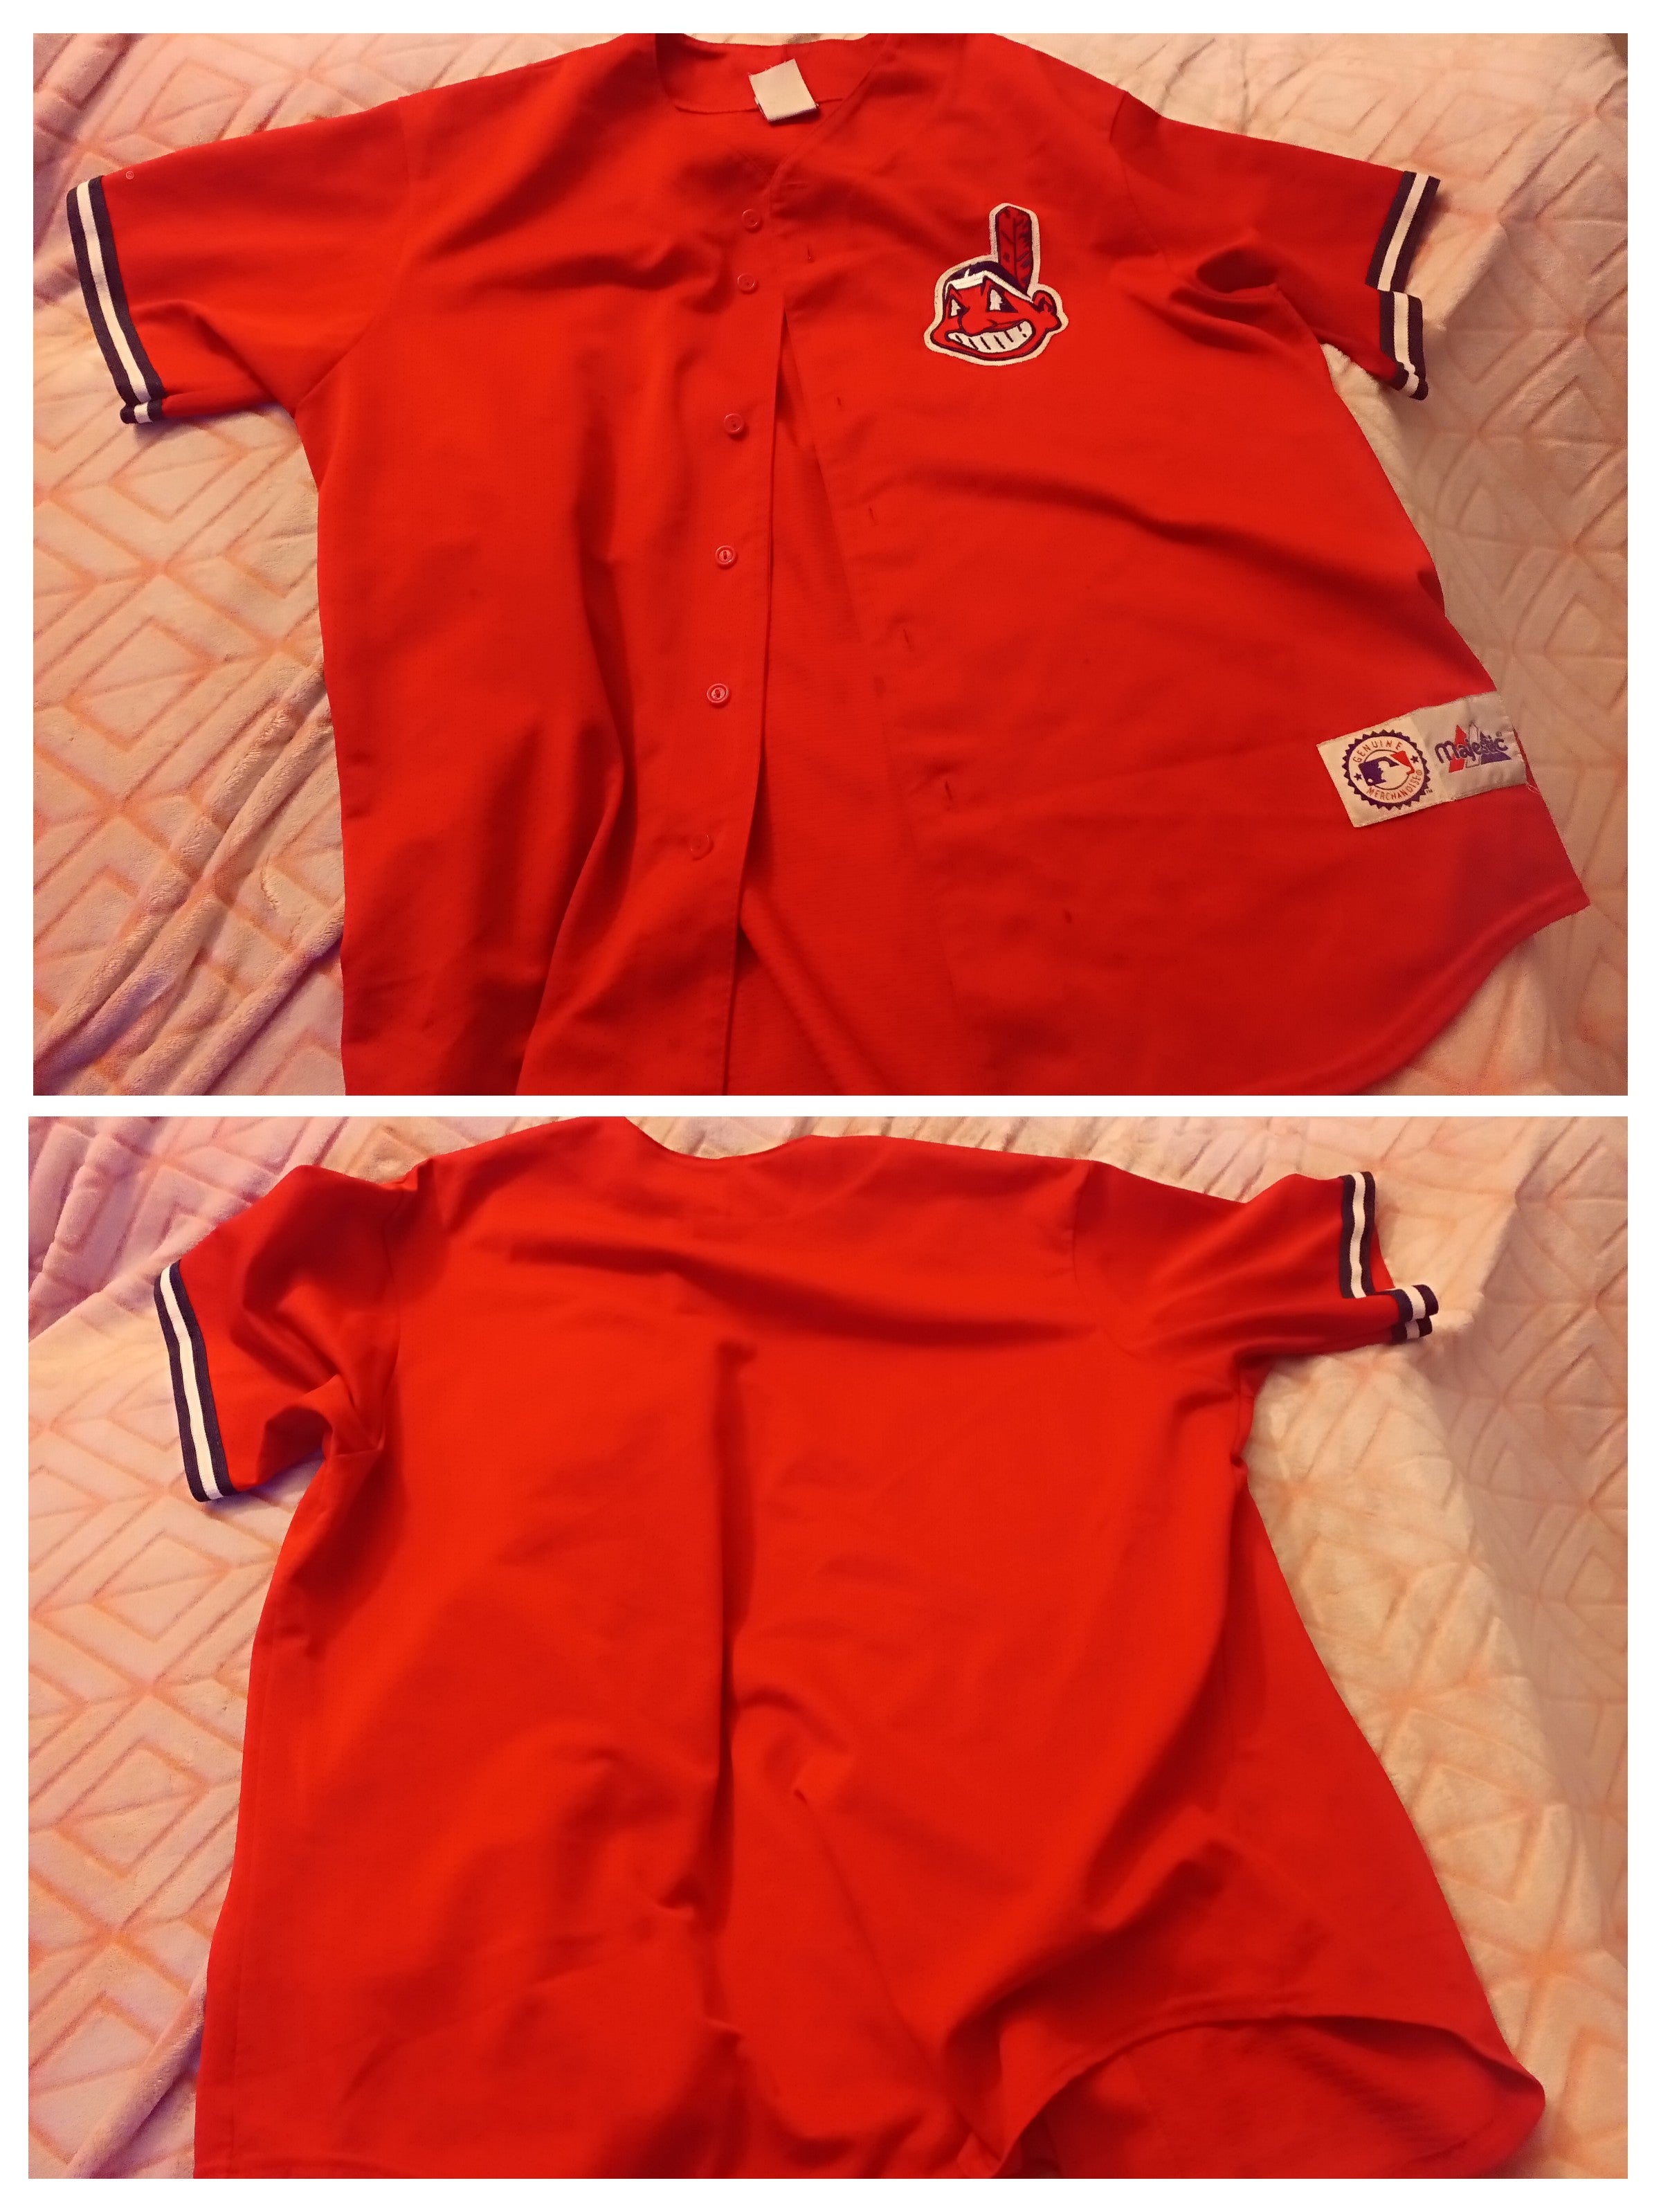 True Fan Chicago Cubs XL Jersey Sosa for Sale in San Antonio, TX - OfferUp